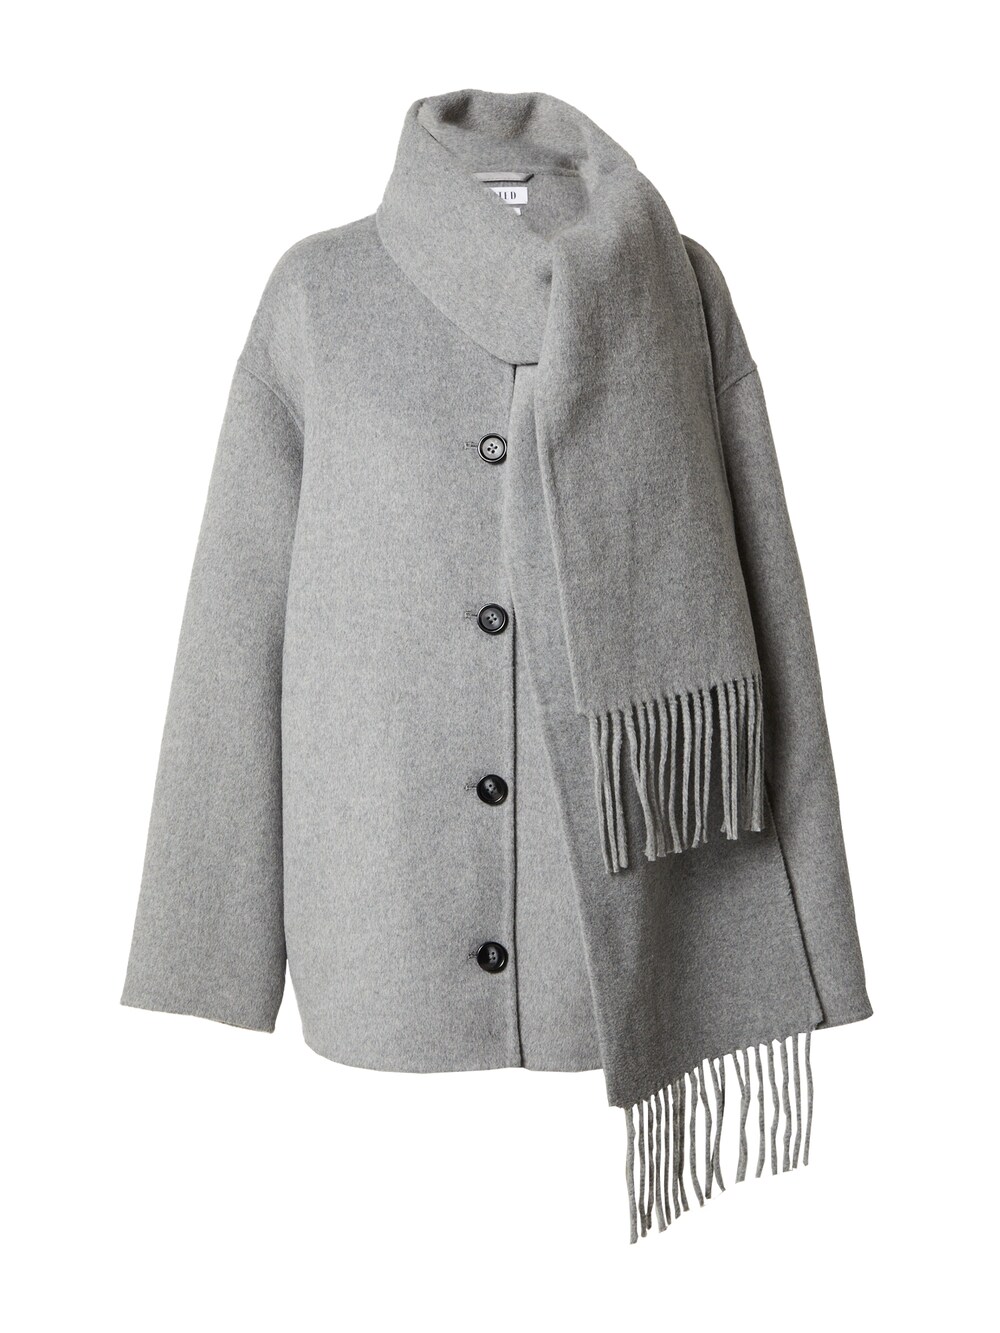 Межсезонное пальто EDITED Mayu, серый межсезонное пальто edited tosca пестрый серый